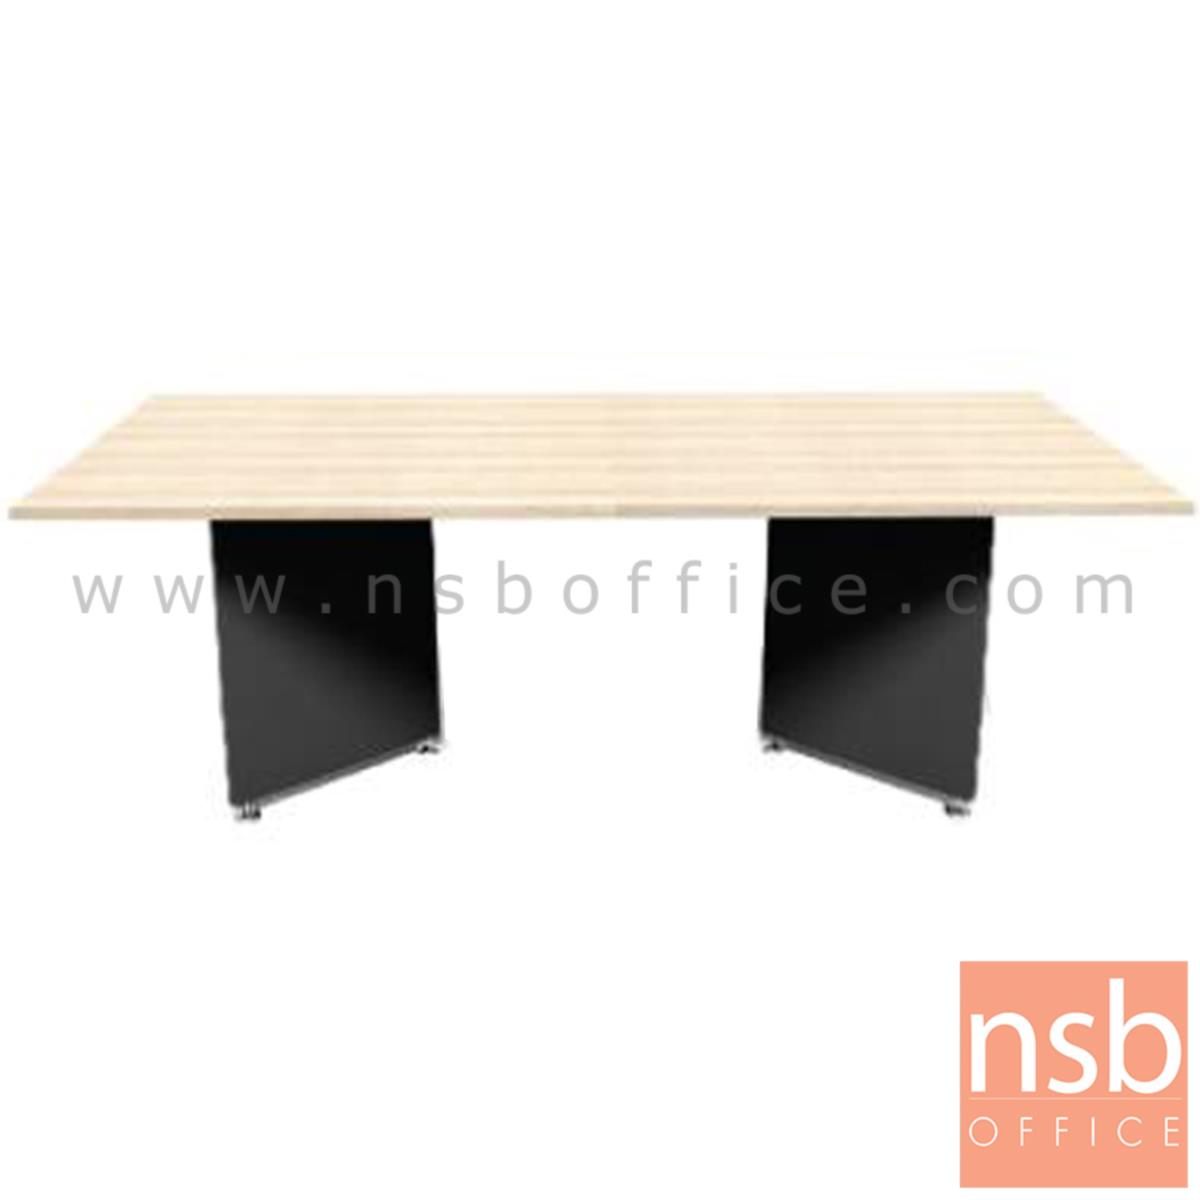 โต๊ะประชุมทรงสี่เหลี่ยม รุ่น Moritz (มอริทซ์) ขนาด 240W cm. สีแกรนโอ๊คตัดกราไฟท์